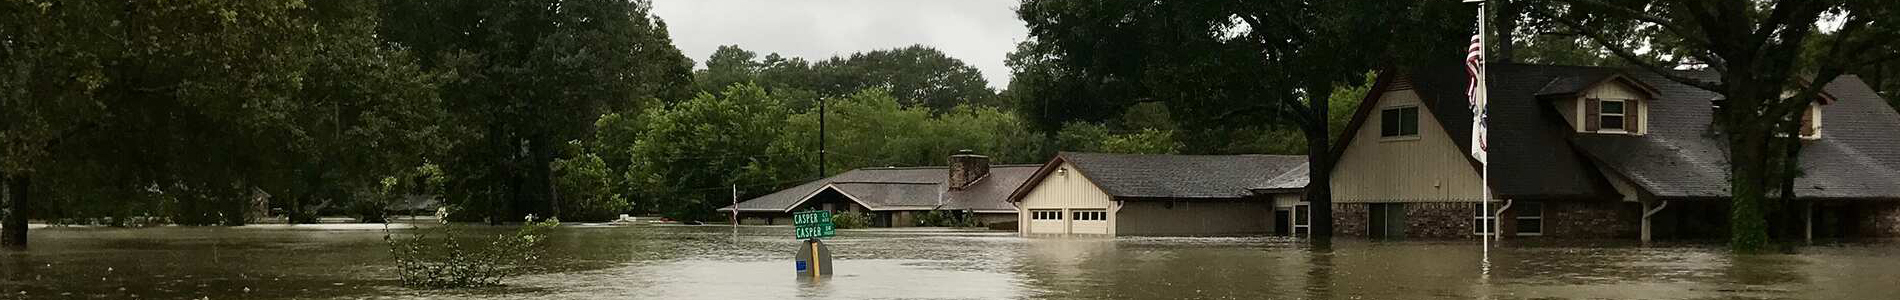 Flooded neighborhood 1